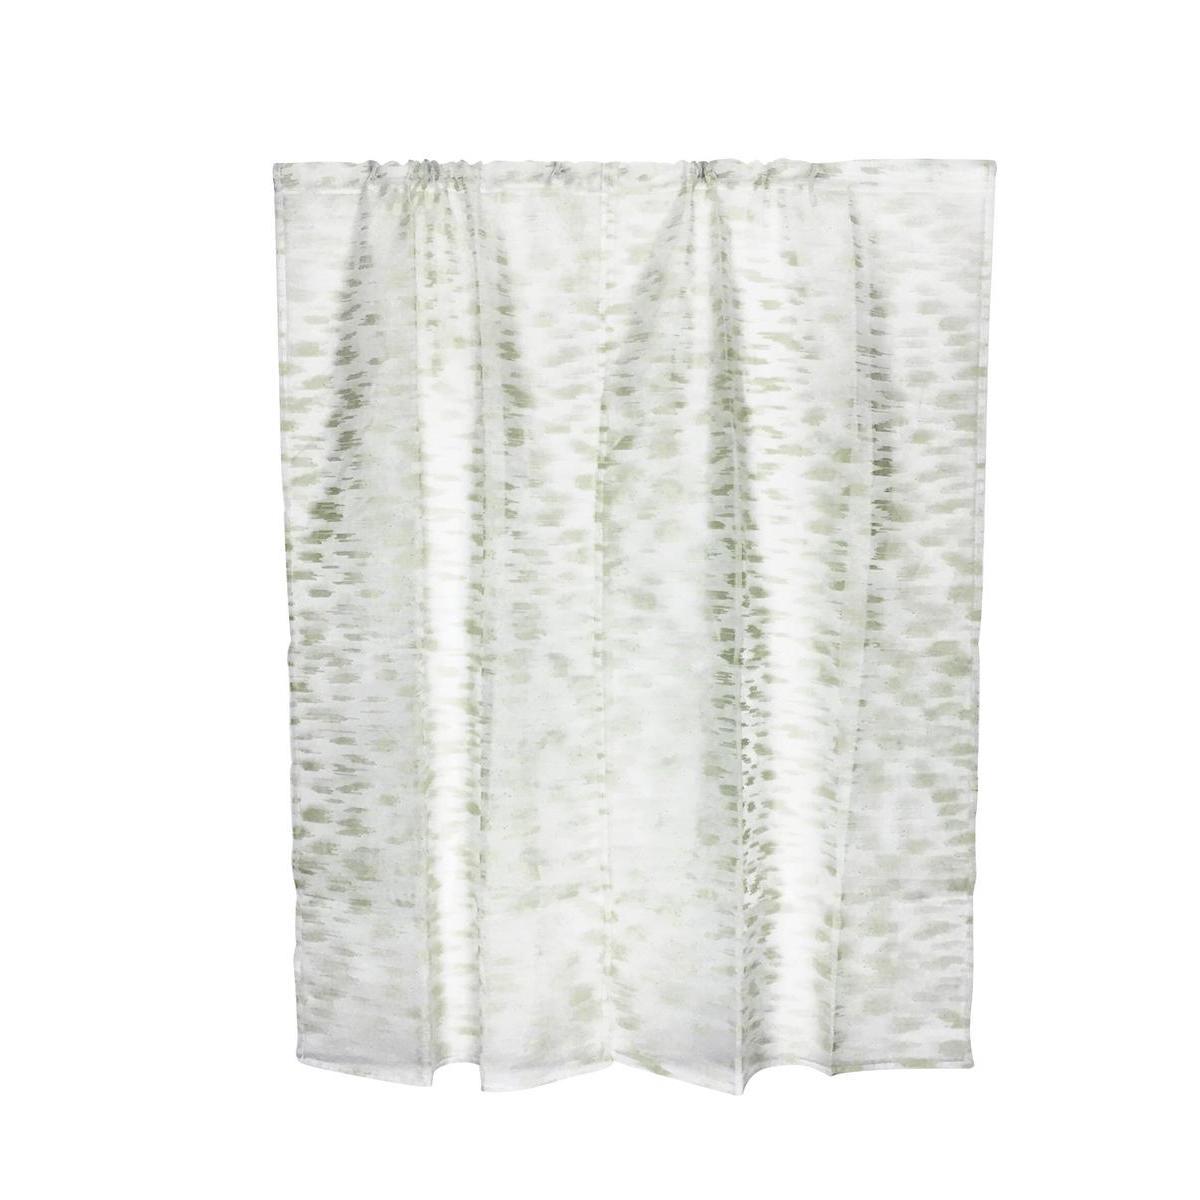 Paire de vitrages - 60 x 90 cm - 100 % Polyester - Vert d'eau